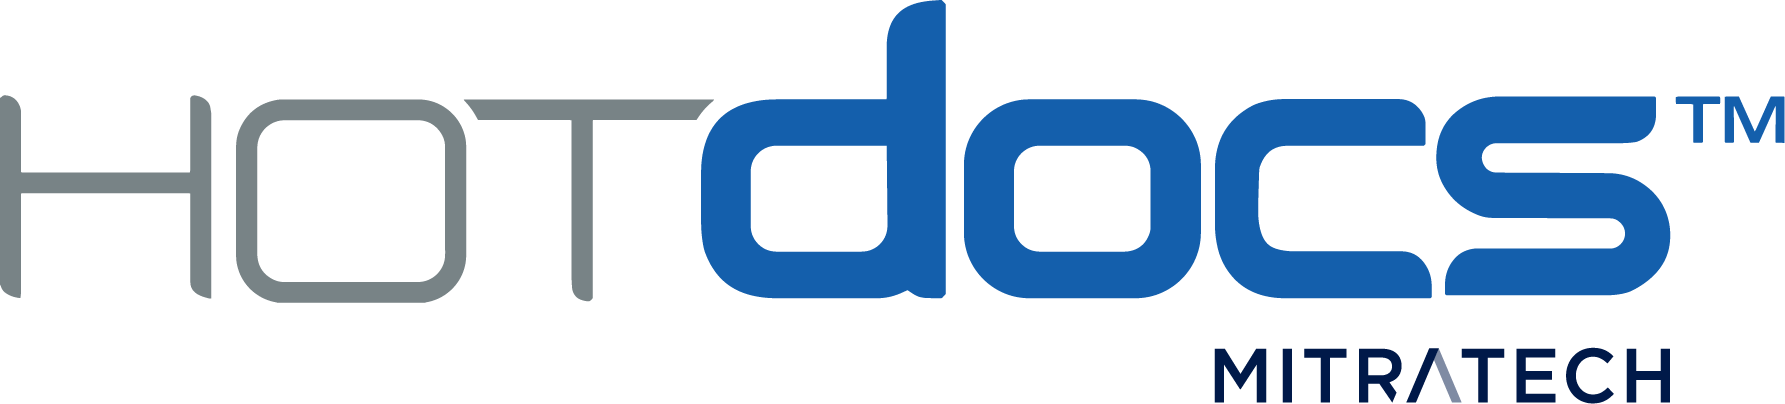 Hotdocs Logo